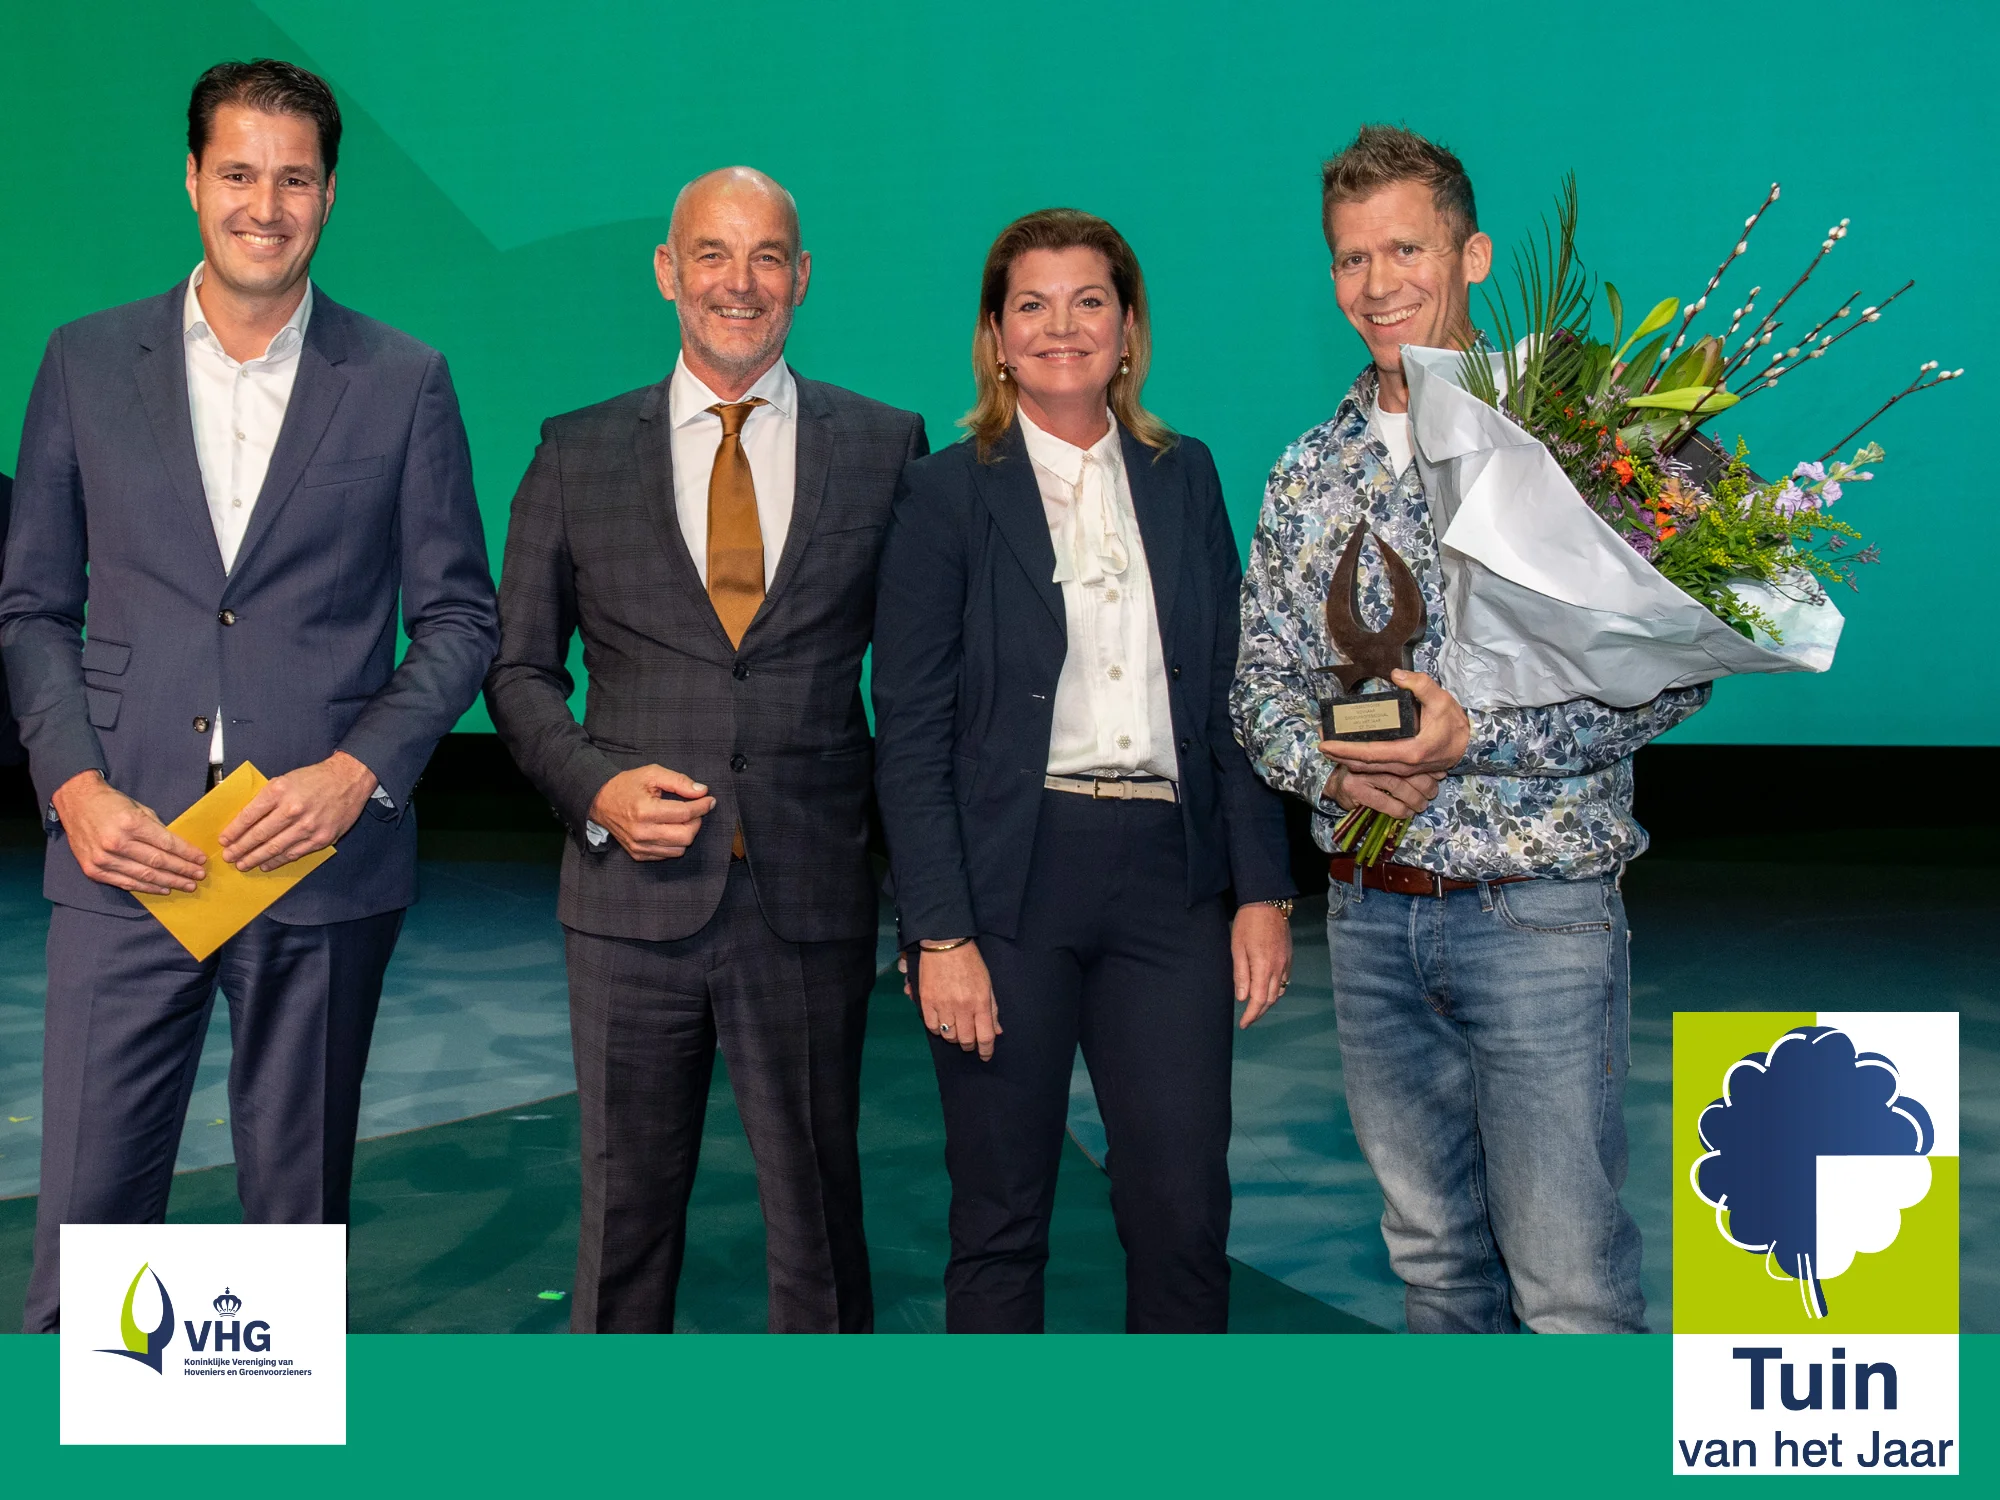 lindenbosch-winnaar-vhg-tuin-van-het-jaar-2020-logo